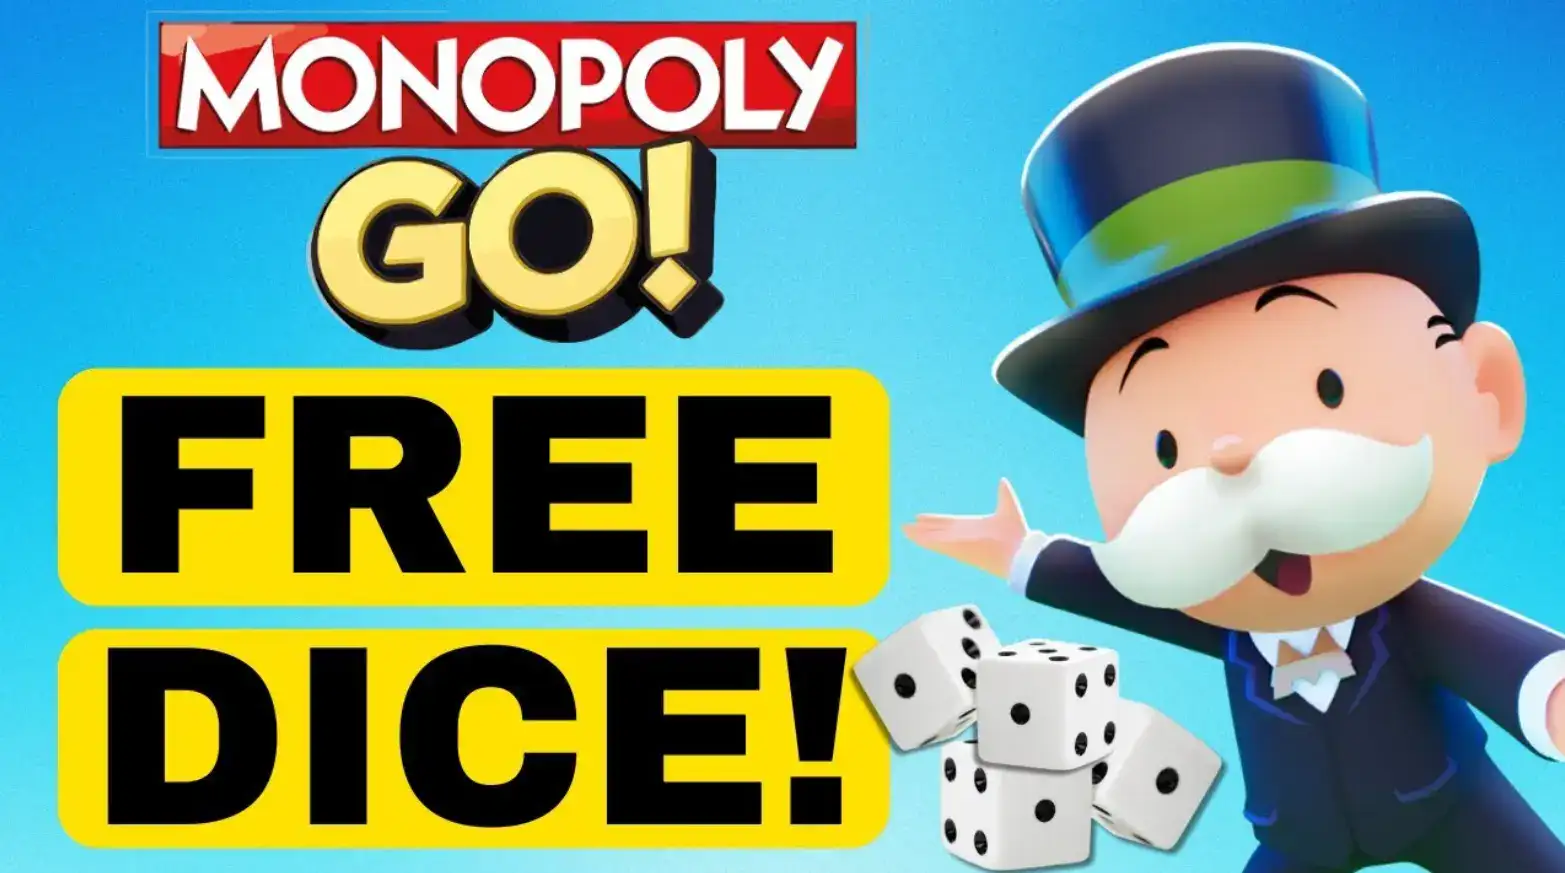 monopoly go free dice links